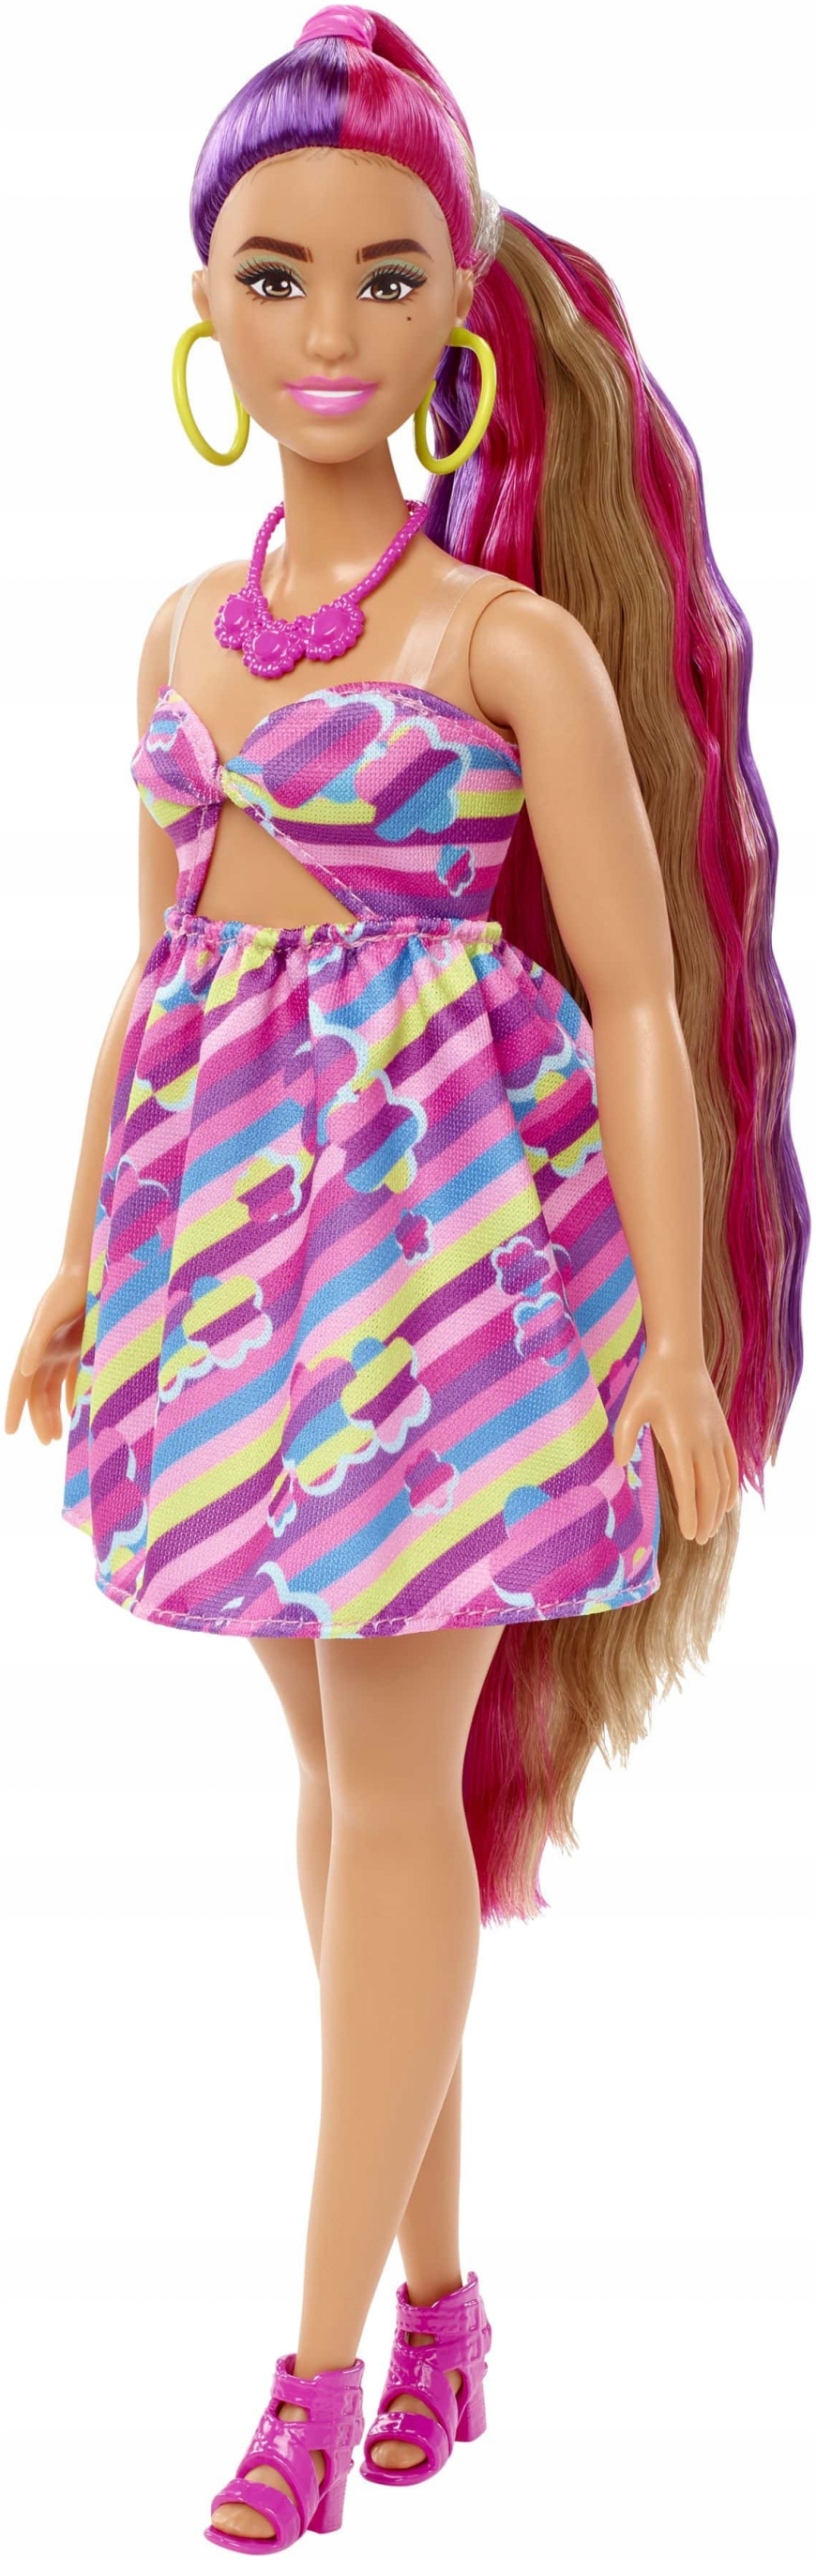 Mattel - Barbie Totally Hair blond/růžové vlasy